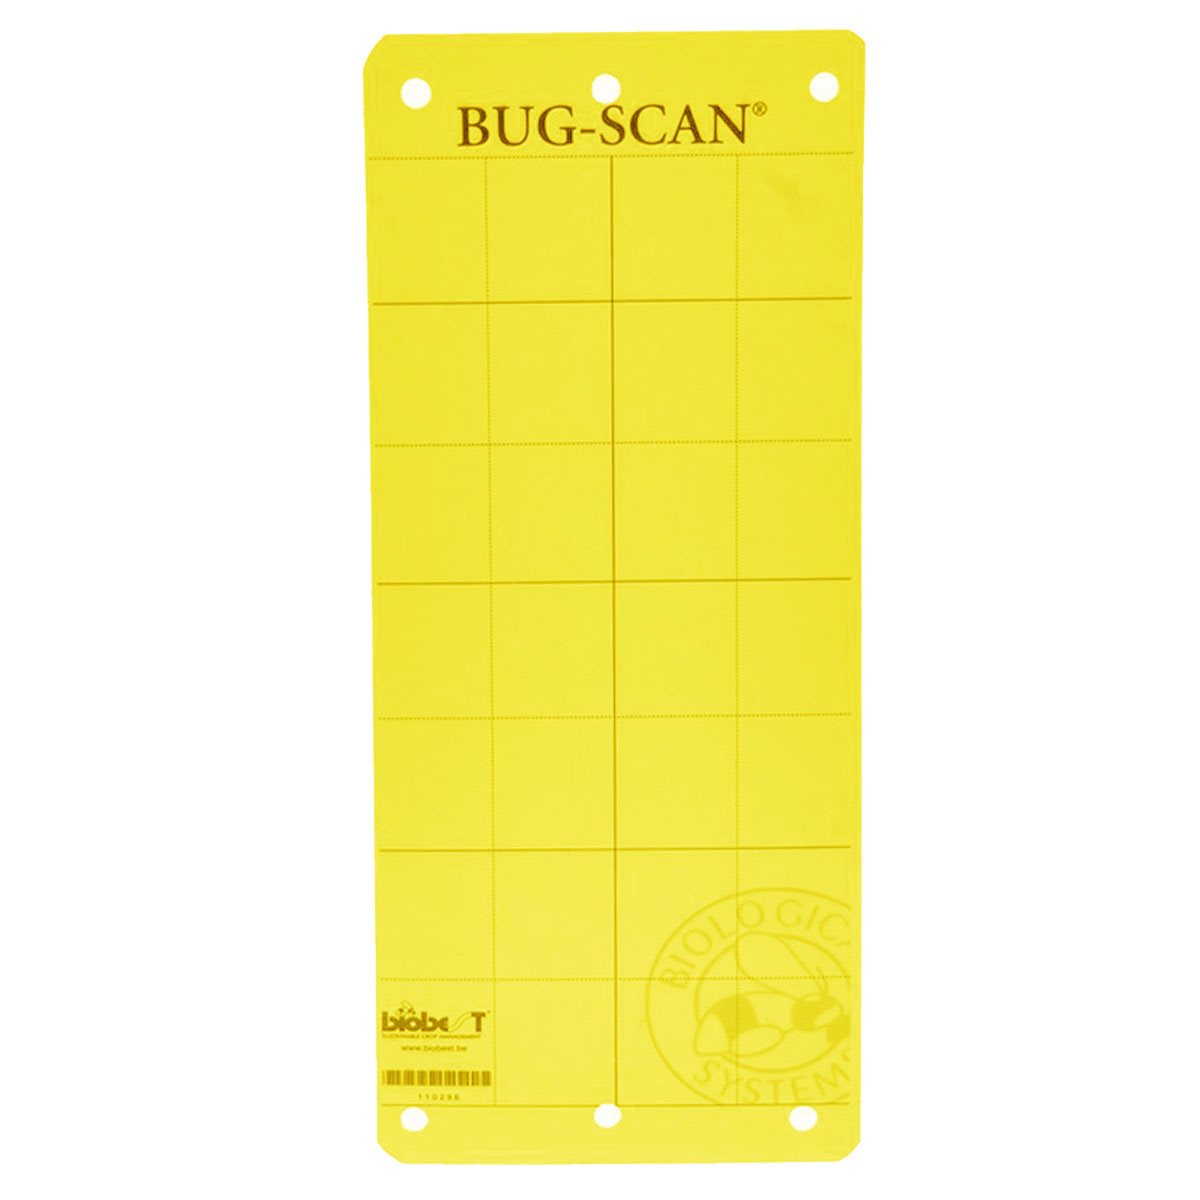 Product Image:Piège autocollant Bug-Scan jaune  pour puceron / aleurode (20 / paquet)